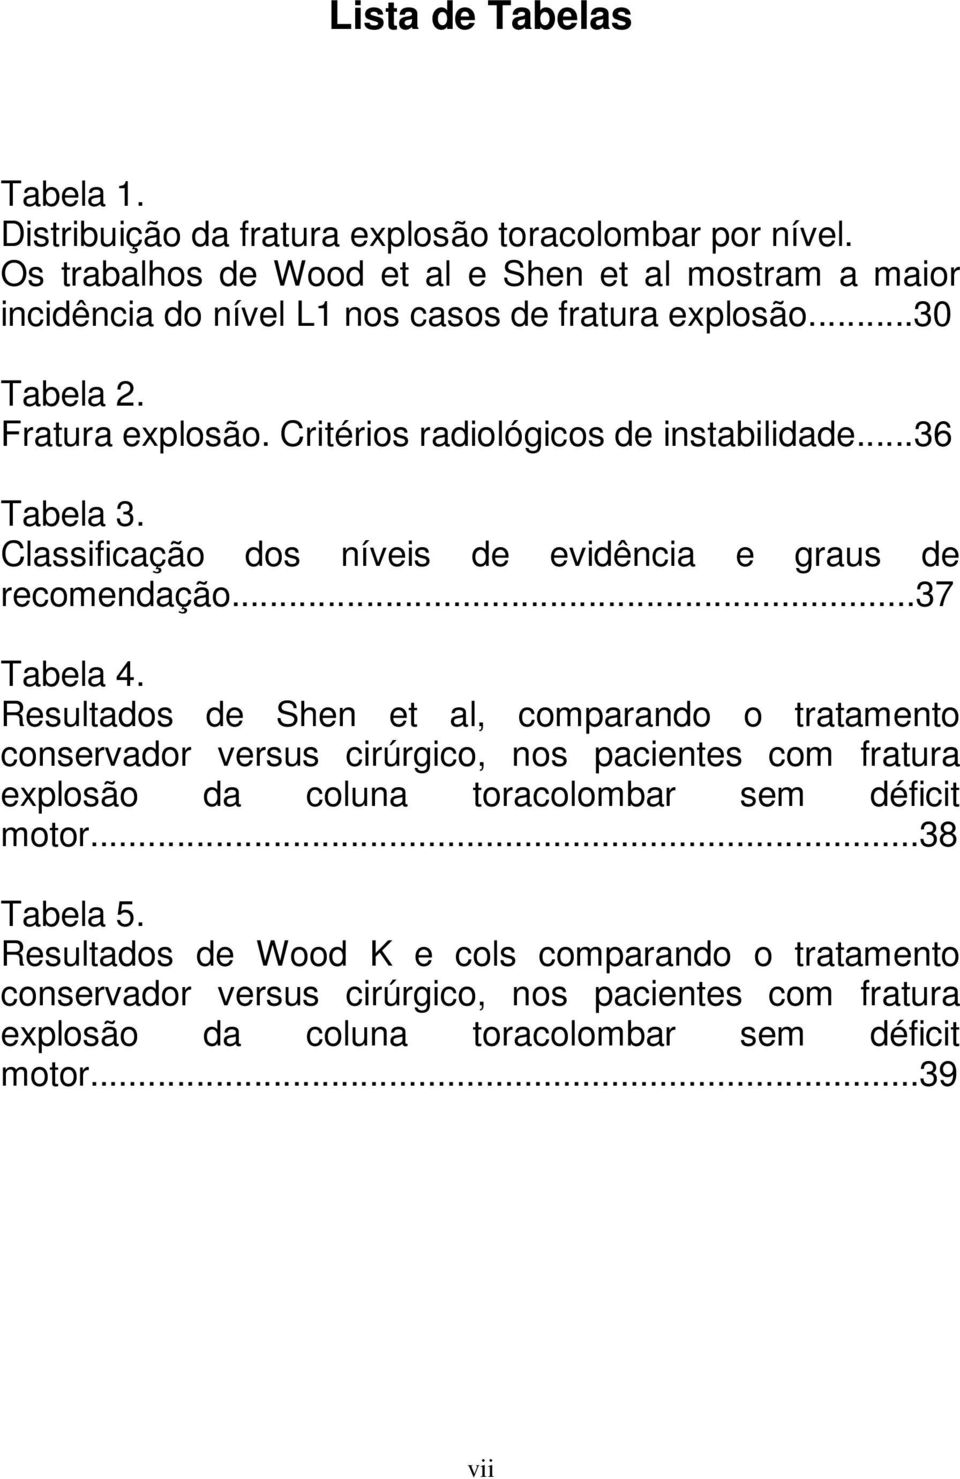 Critérios radiológicos de instabilidade...36 Tabela 3. Classificação dos níveis de evidência e graus de recomendação...37 Tabela 4.